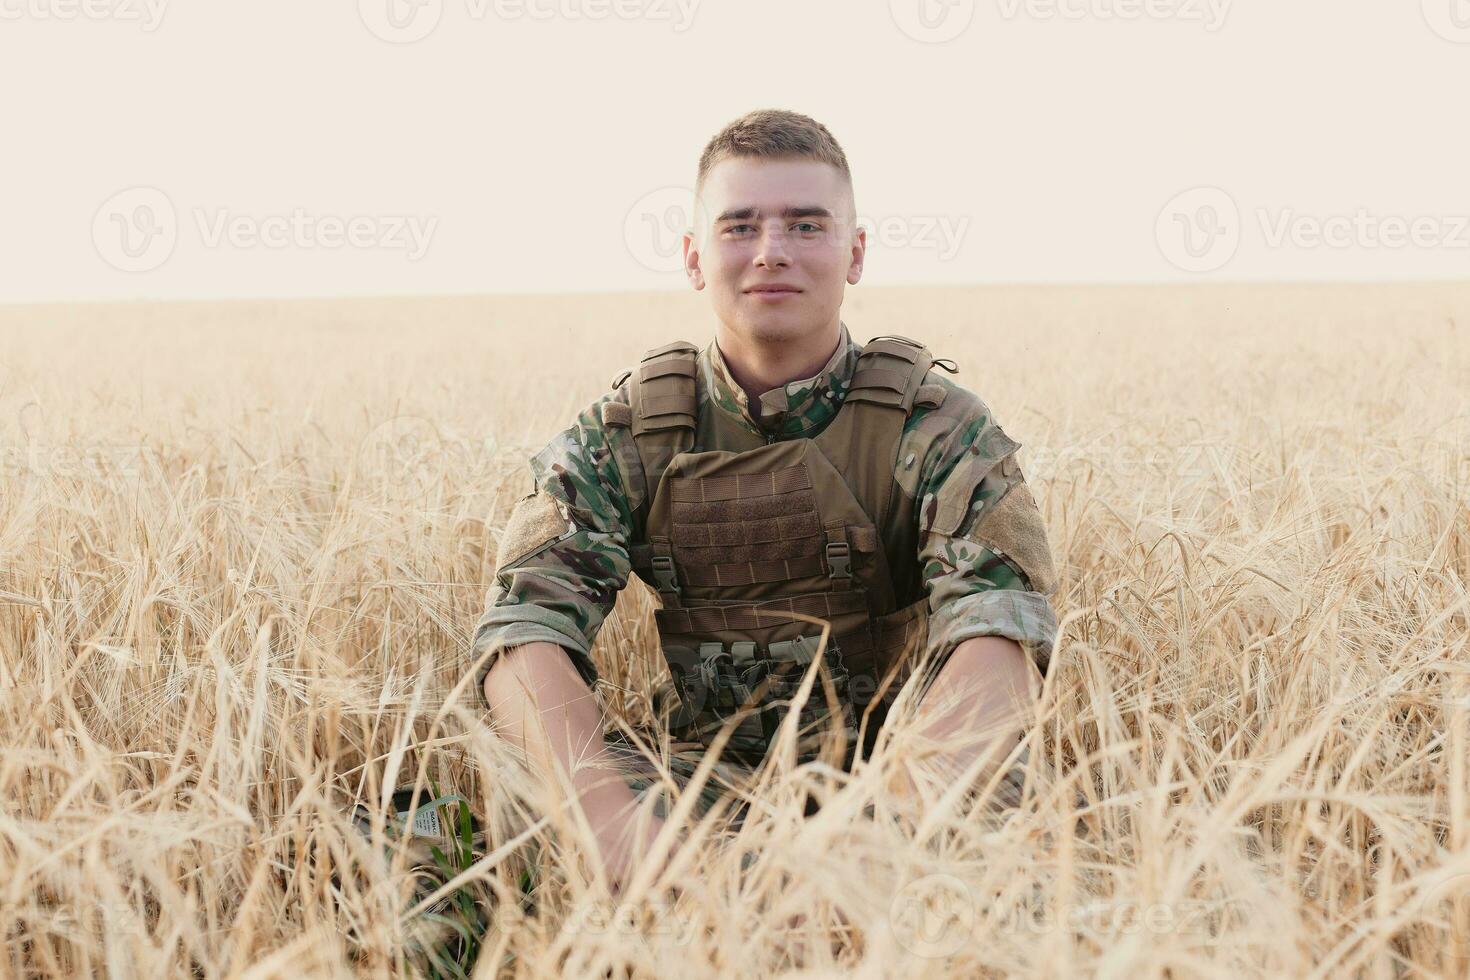 soldado homem em pé contra uma campo foto